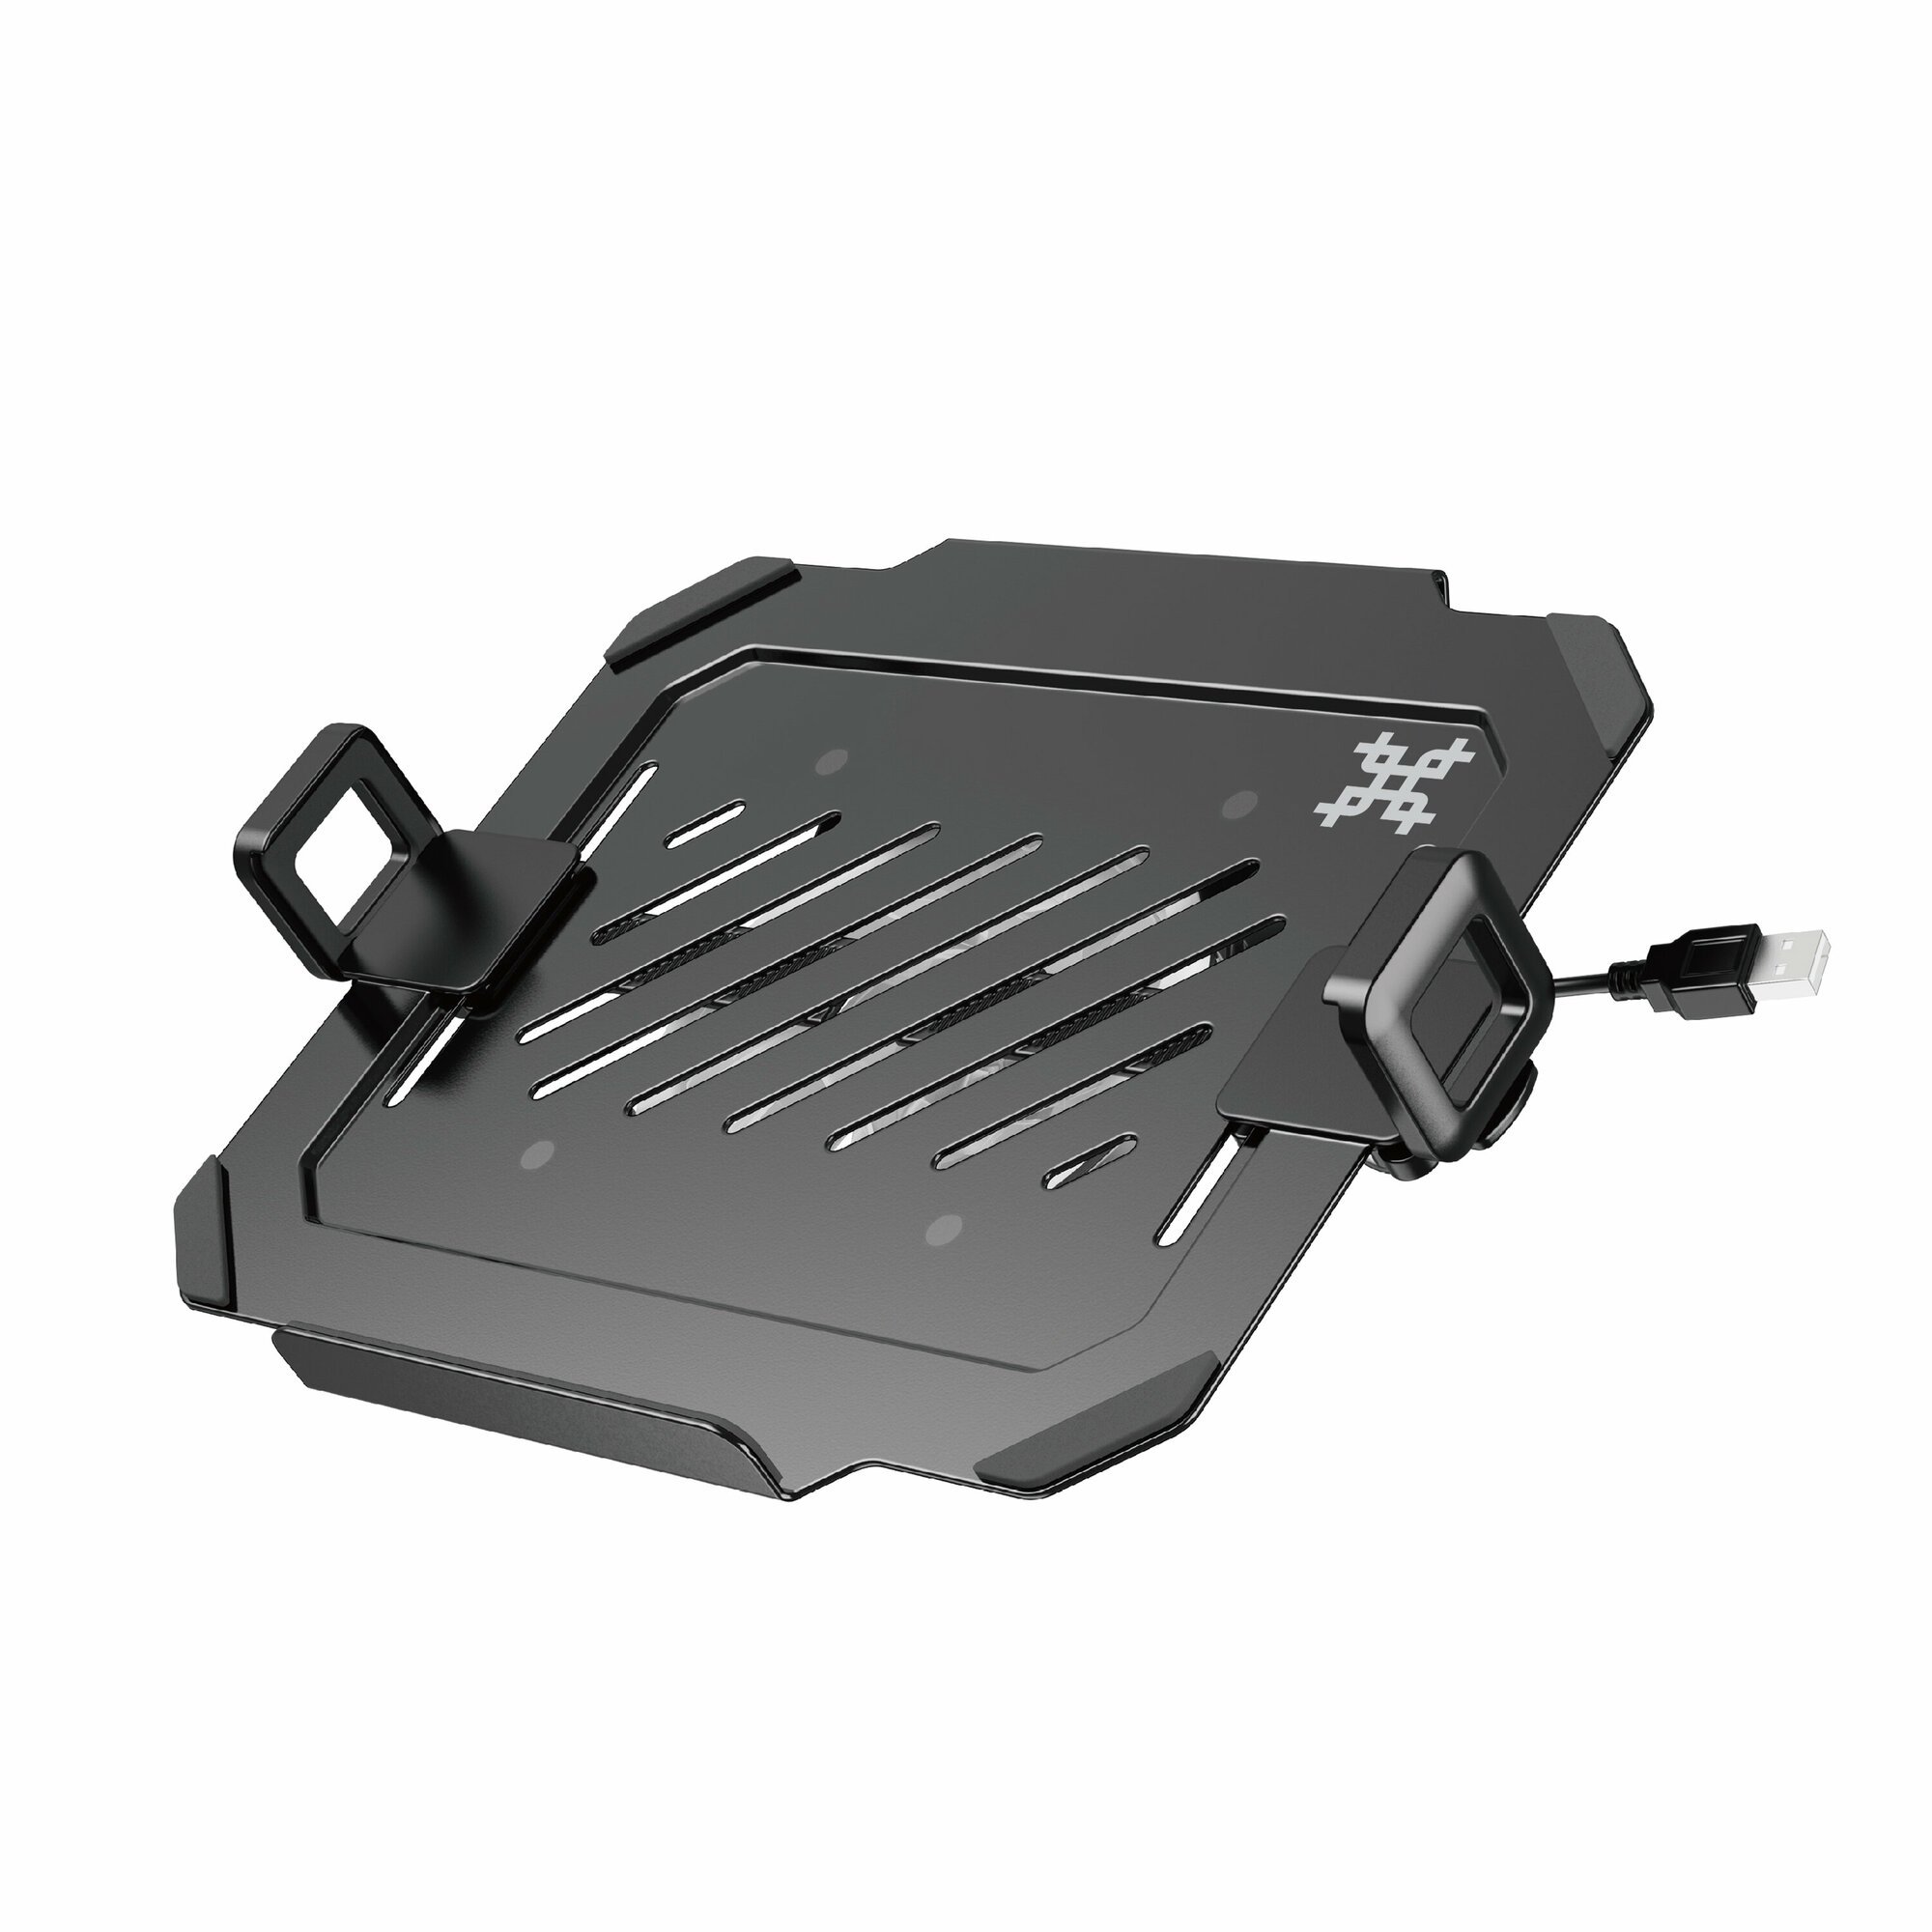 Полка-крепление Uniteki DMN09USB для ноутбука или планшета диагональ 12-17 дюймов раздвижная с охлаждением и подсветкой RGB